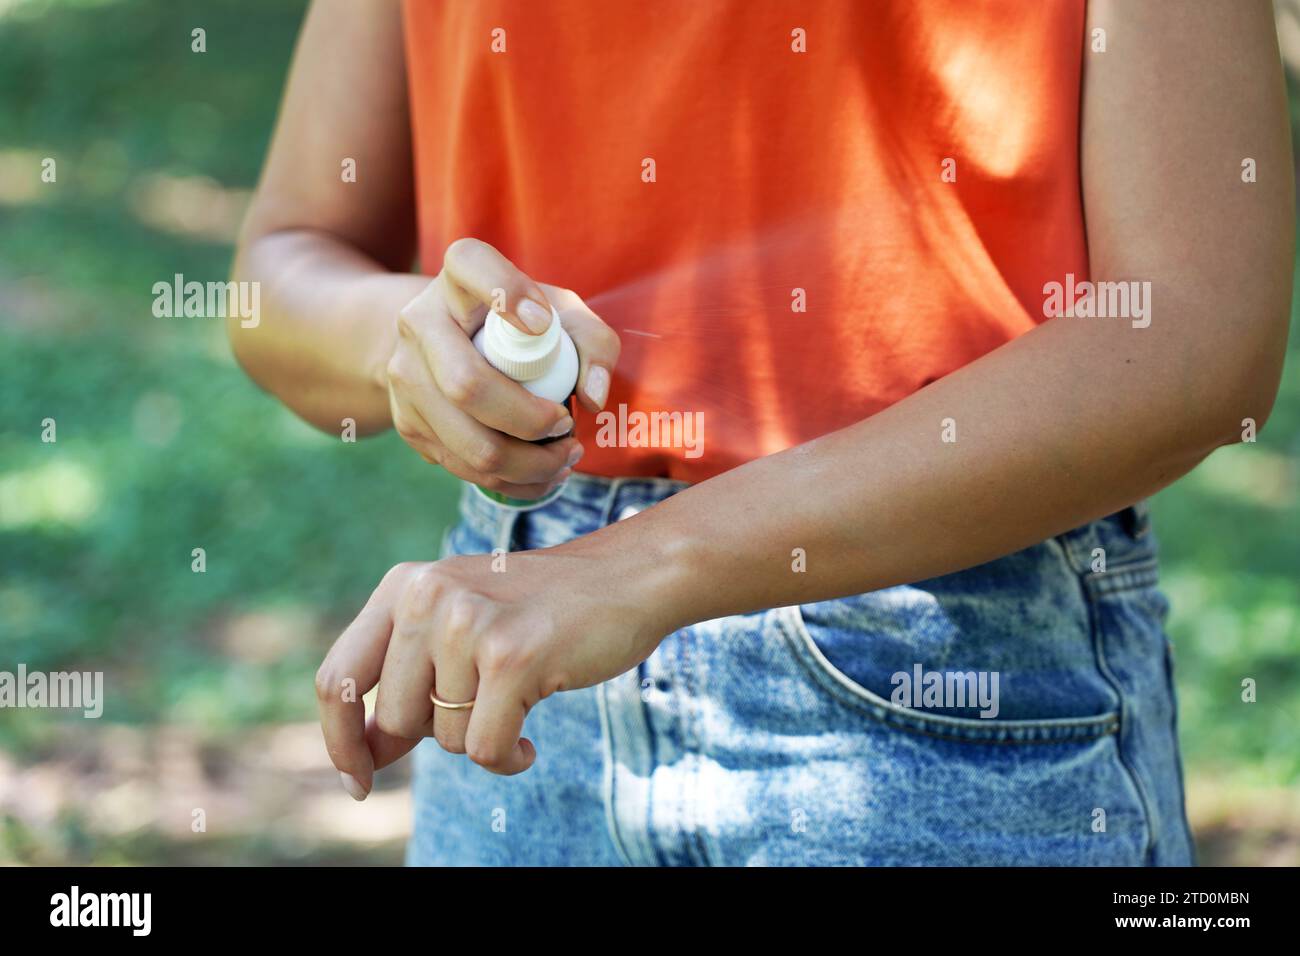 Ragazza che spruzza repellente per insetti sul braccio all'aperto in natura utilizzando un flacone spray. Repellente per zanzare. Spray anti insetti. Foto Stock